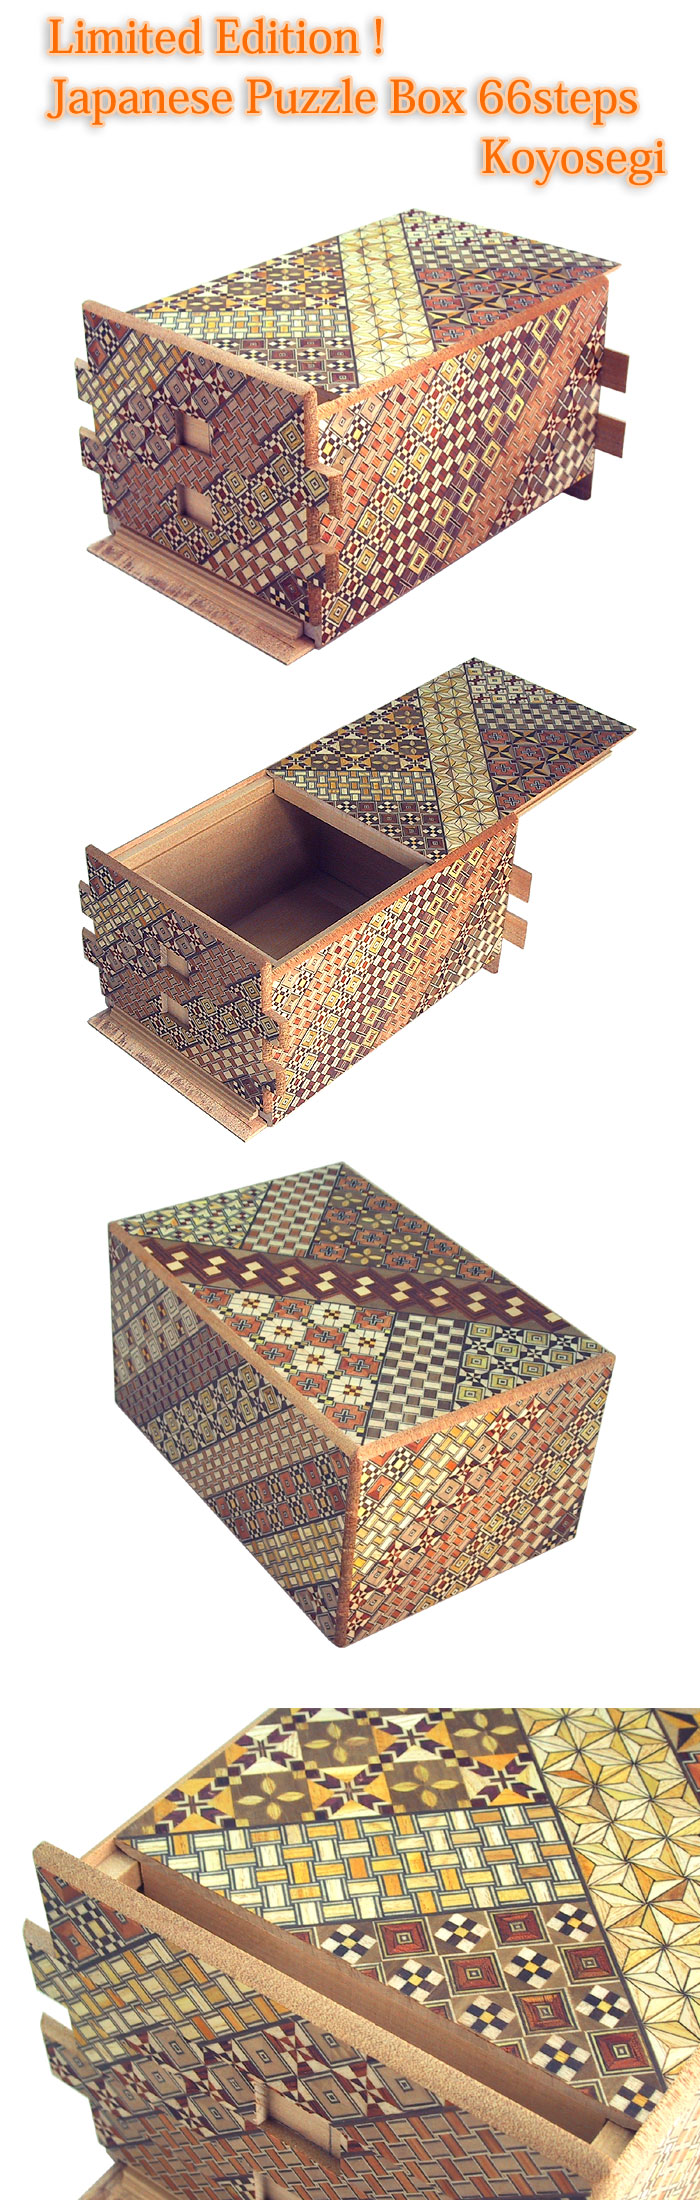 Japanese Puzzle Box 66steps Koyosegi